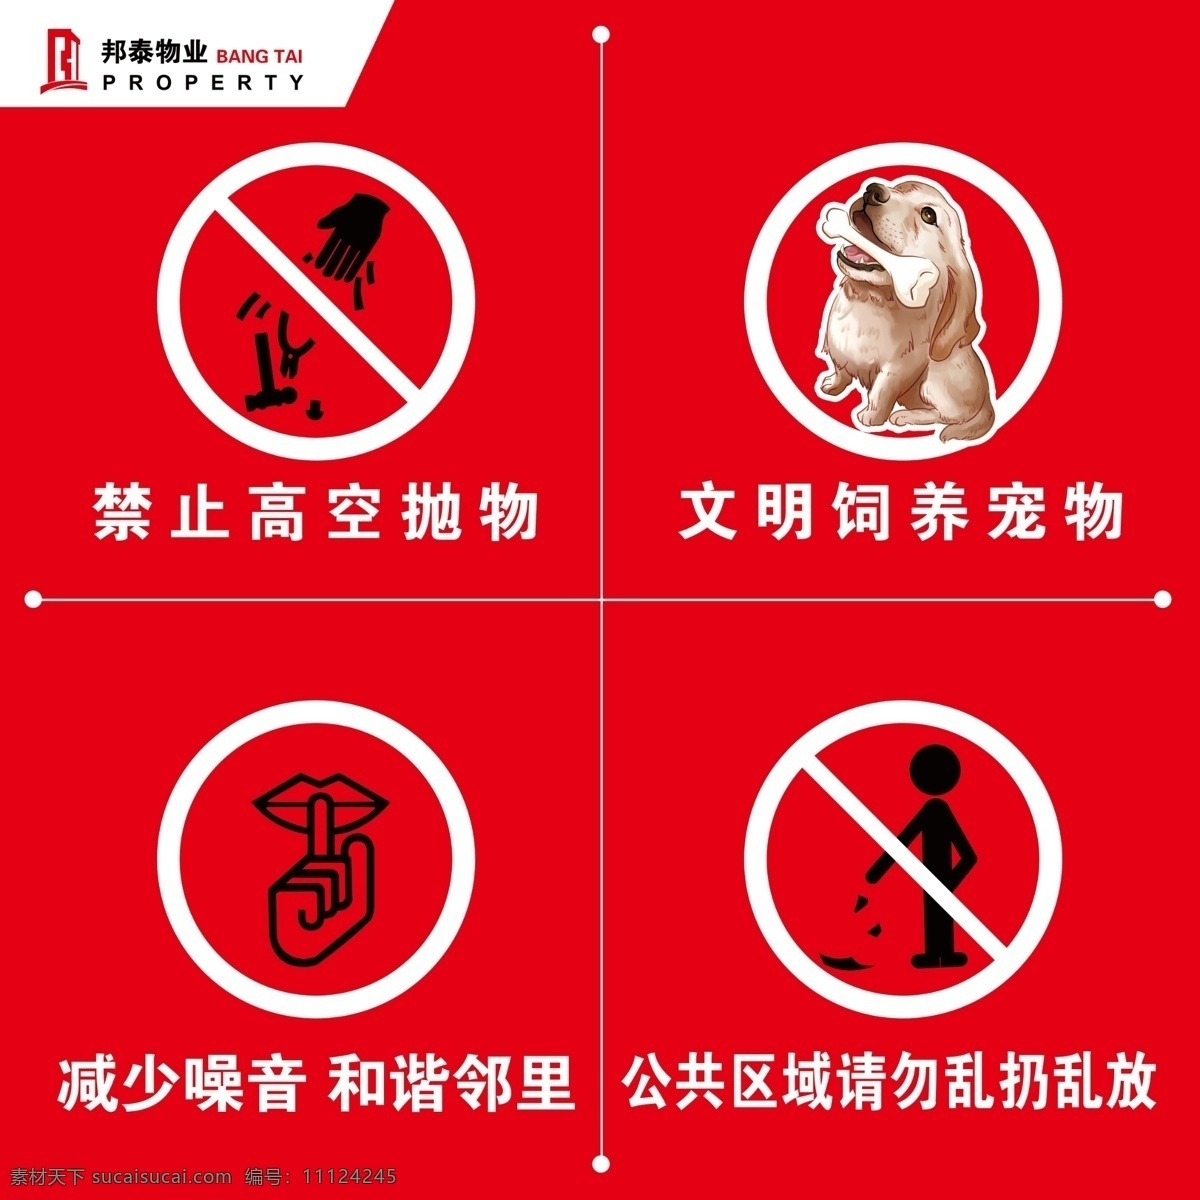 小区楼前牌 禁止高空抛物 文明饲养宠物 减少噪音 门牌 请勿乱丢垃圾 室外广告设计